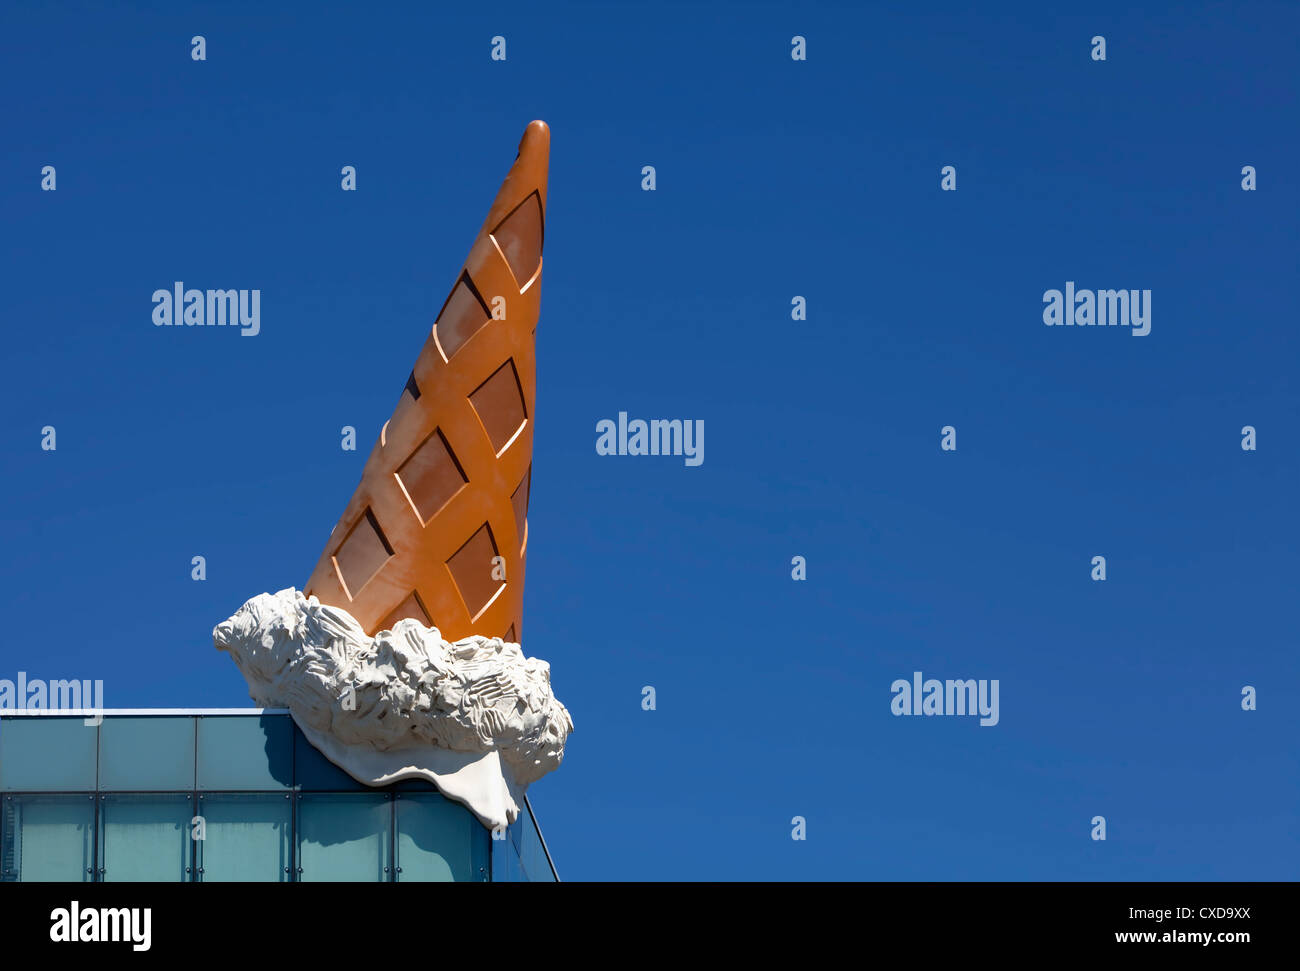 Sank der Kegel des Pop-Art-Künstlers Claes Oldenburg, Kegel Eisskulptur, Dach der Neumarkt Galerie, Köln, Deutschland, Europa Stockfoto